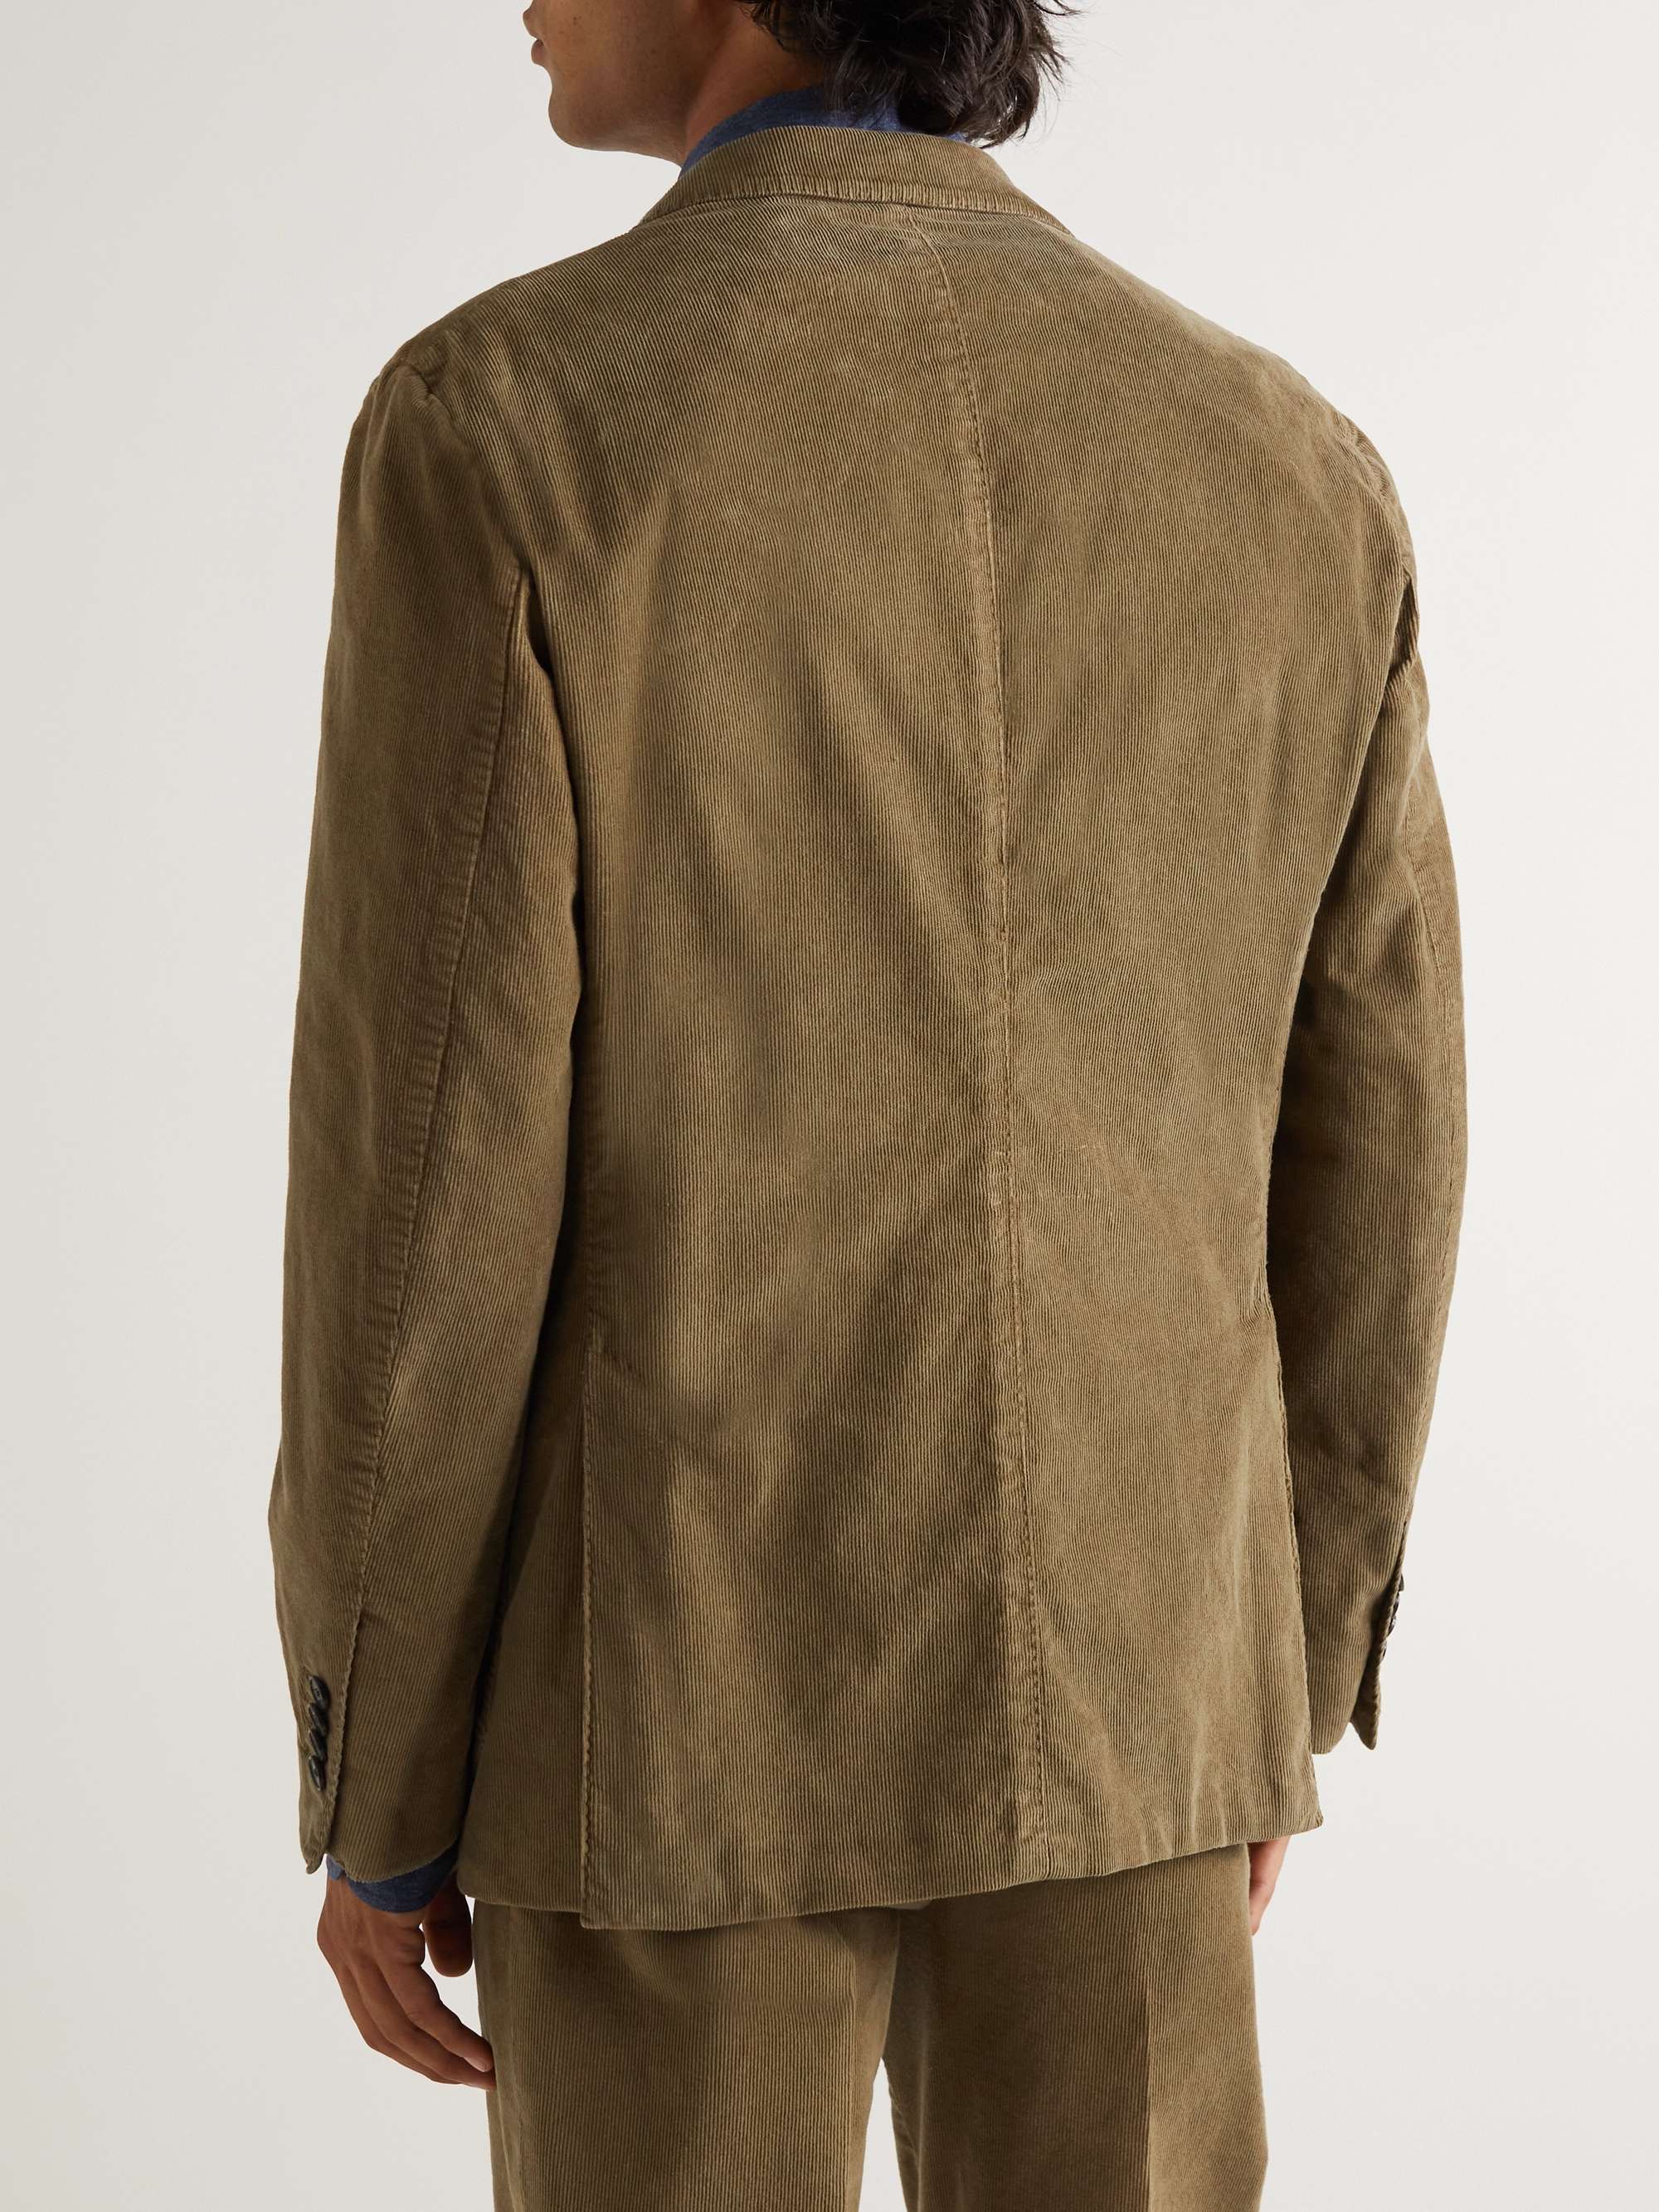 LARDINI Cotton-Blend Corduroy Suit Jacket